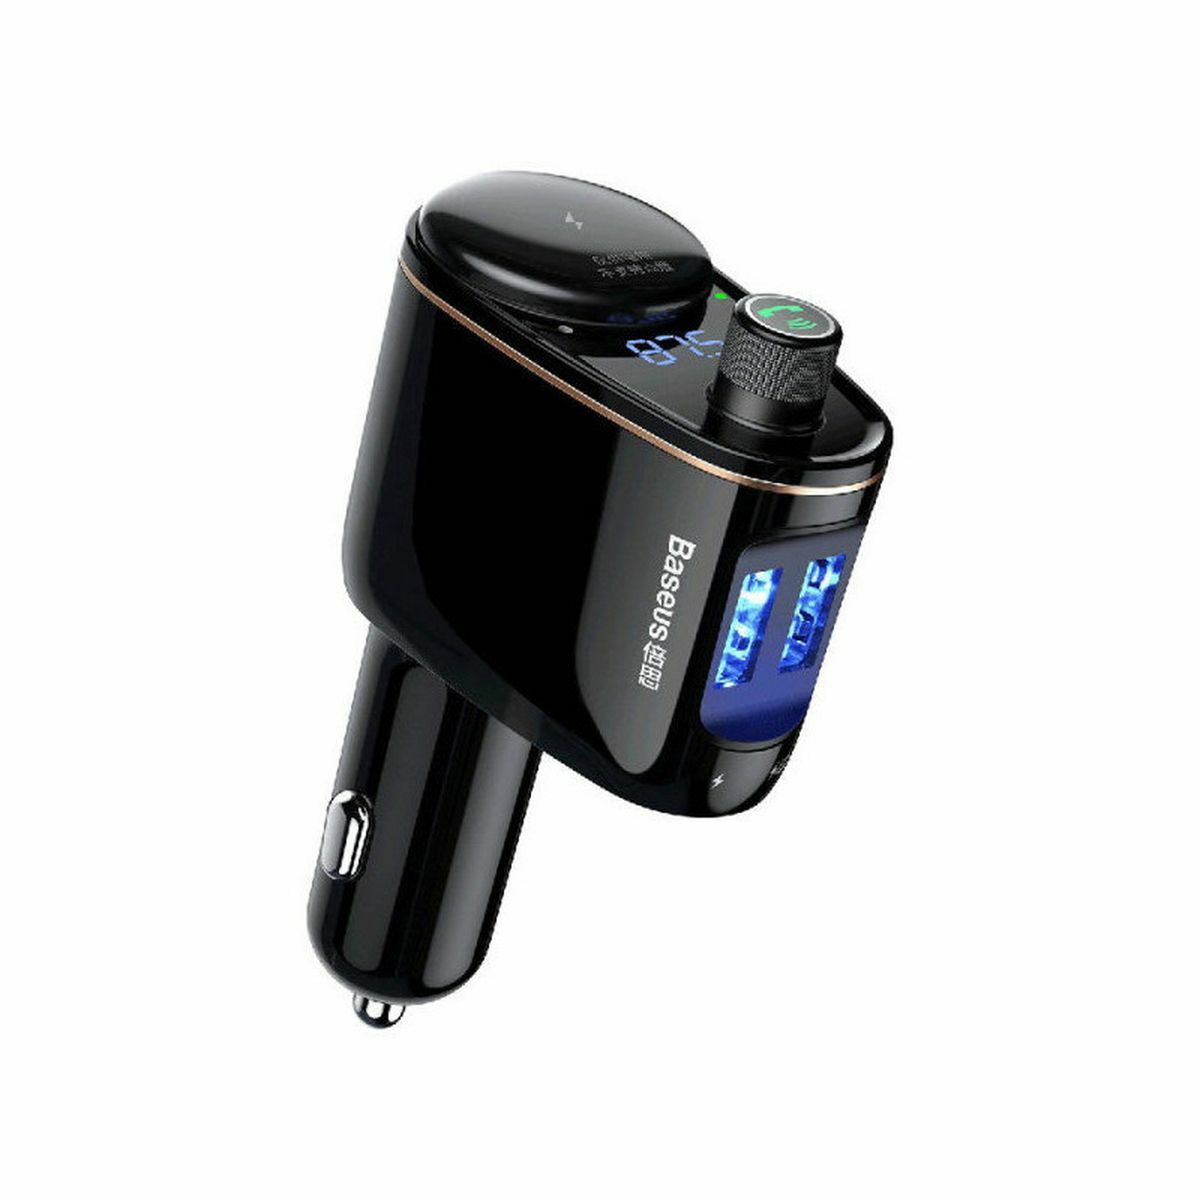 Kép 2/2 - Baseus autós töltő Bluetooth FM Transmitter S-06, USB-A, fekete (CCHC000001)